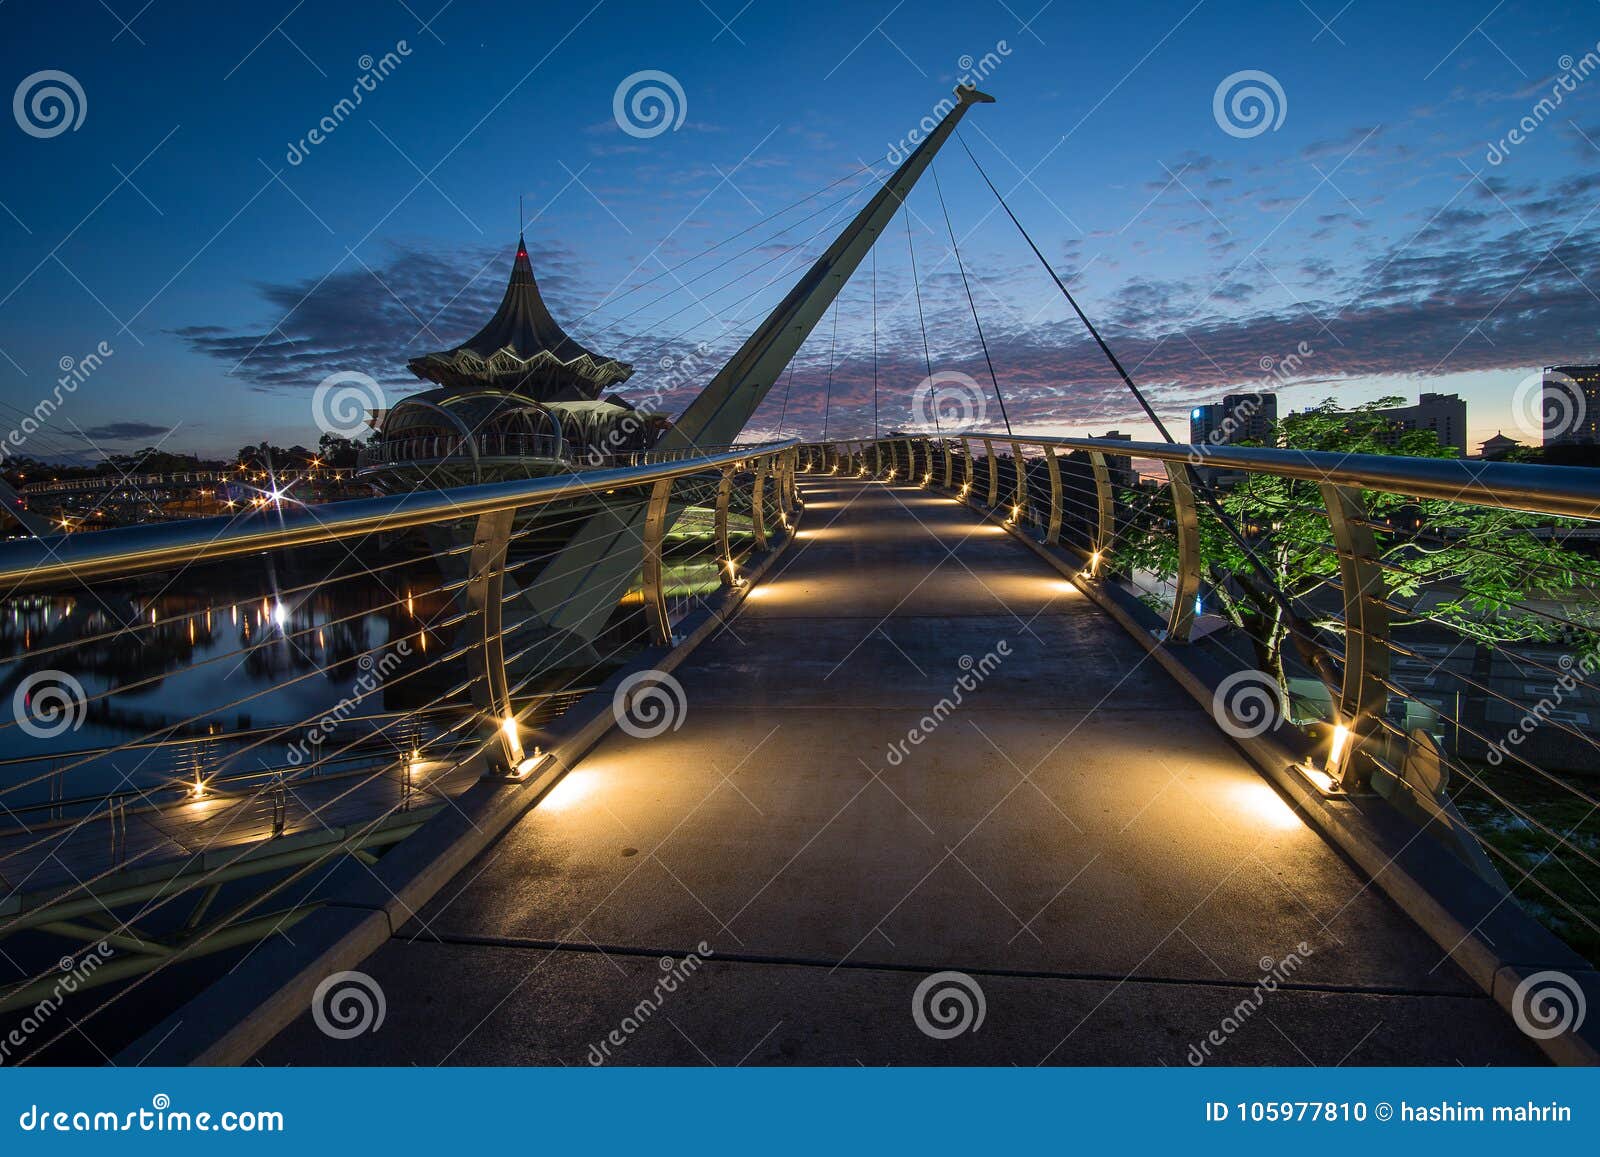 Darul hana bridge